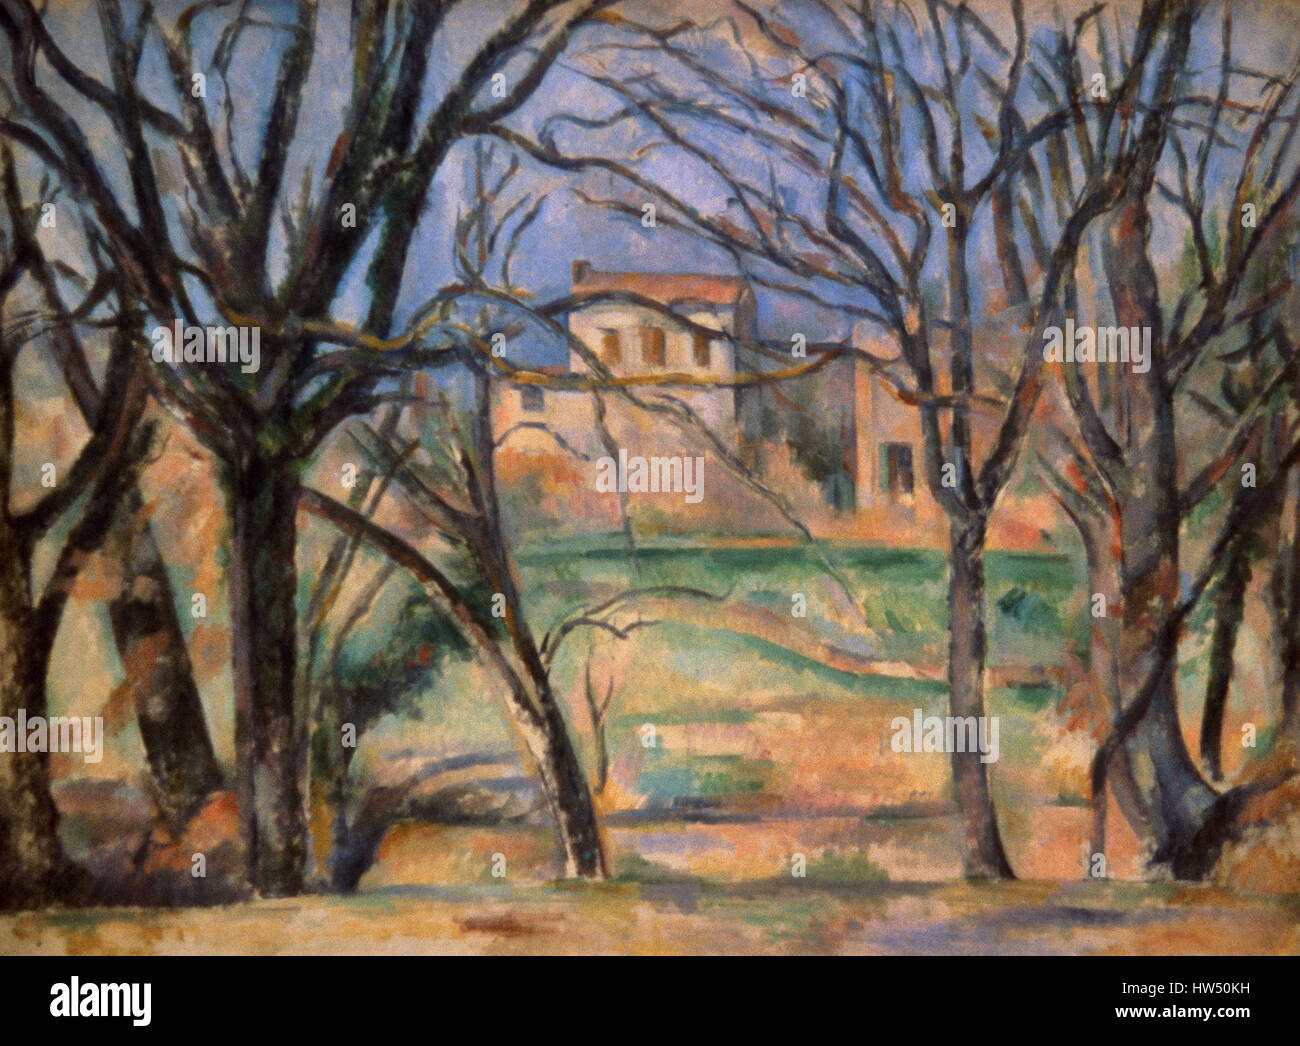 Paul Cézanne (1839-1906). Französischer Maler. Post-Impressionisten. Bäume und Häuser. Öl auf Leinwand, 1885-1886. Orangerie-Museum. Paris. Frankreich. Stockfoto